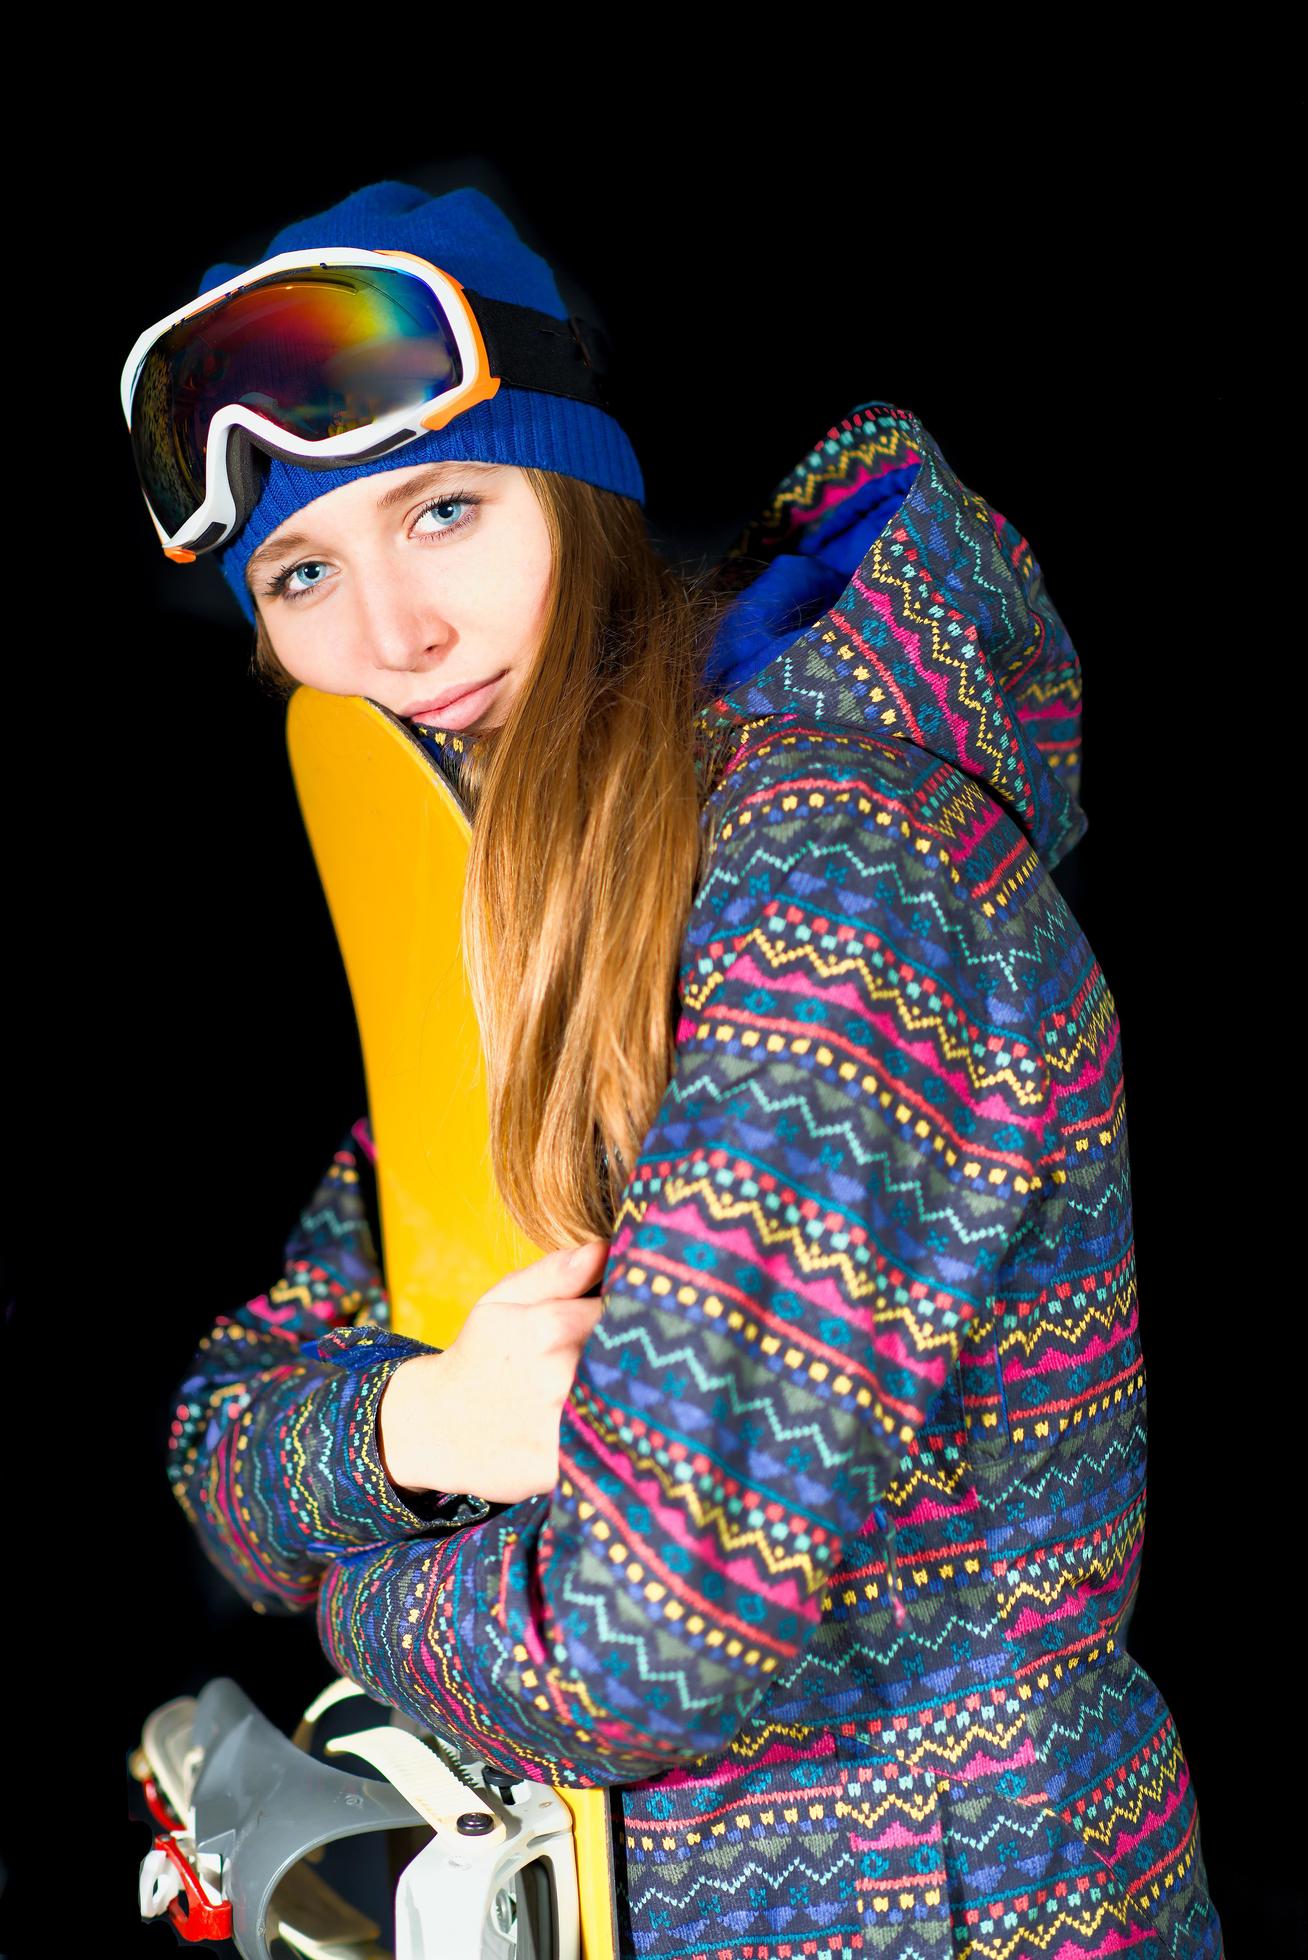 jong meisje omarmt haar snowboard in studio op zwarte achtergrond foto